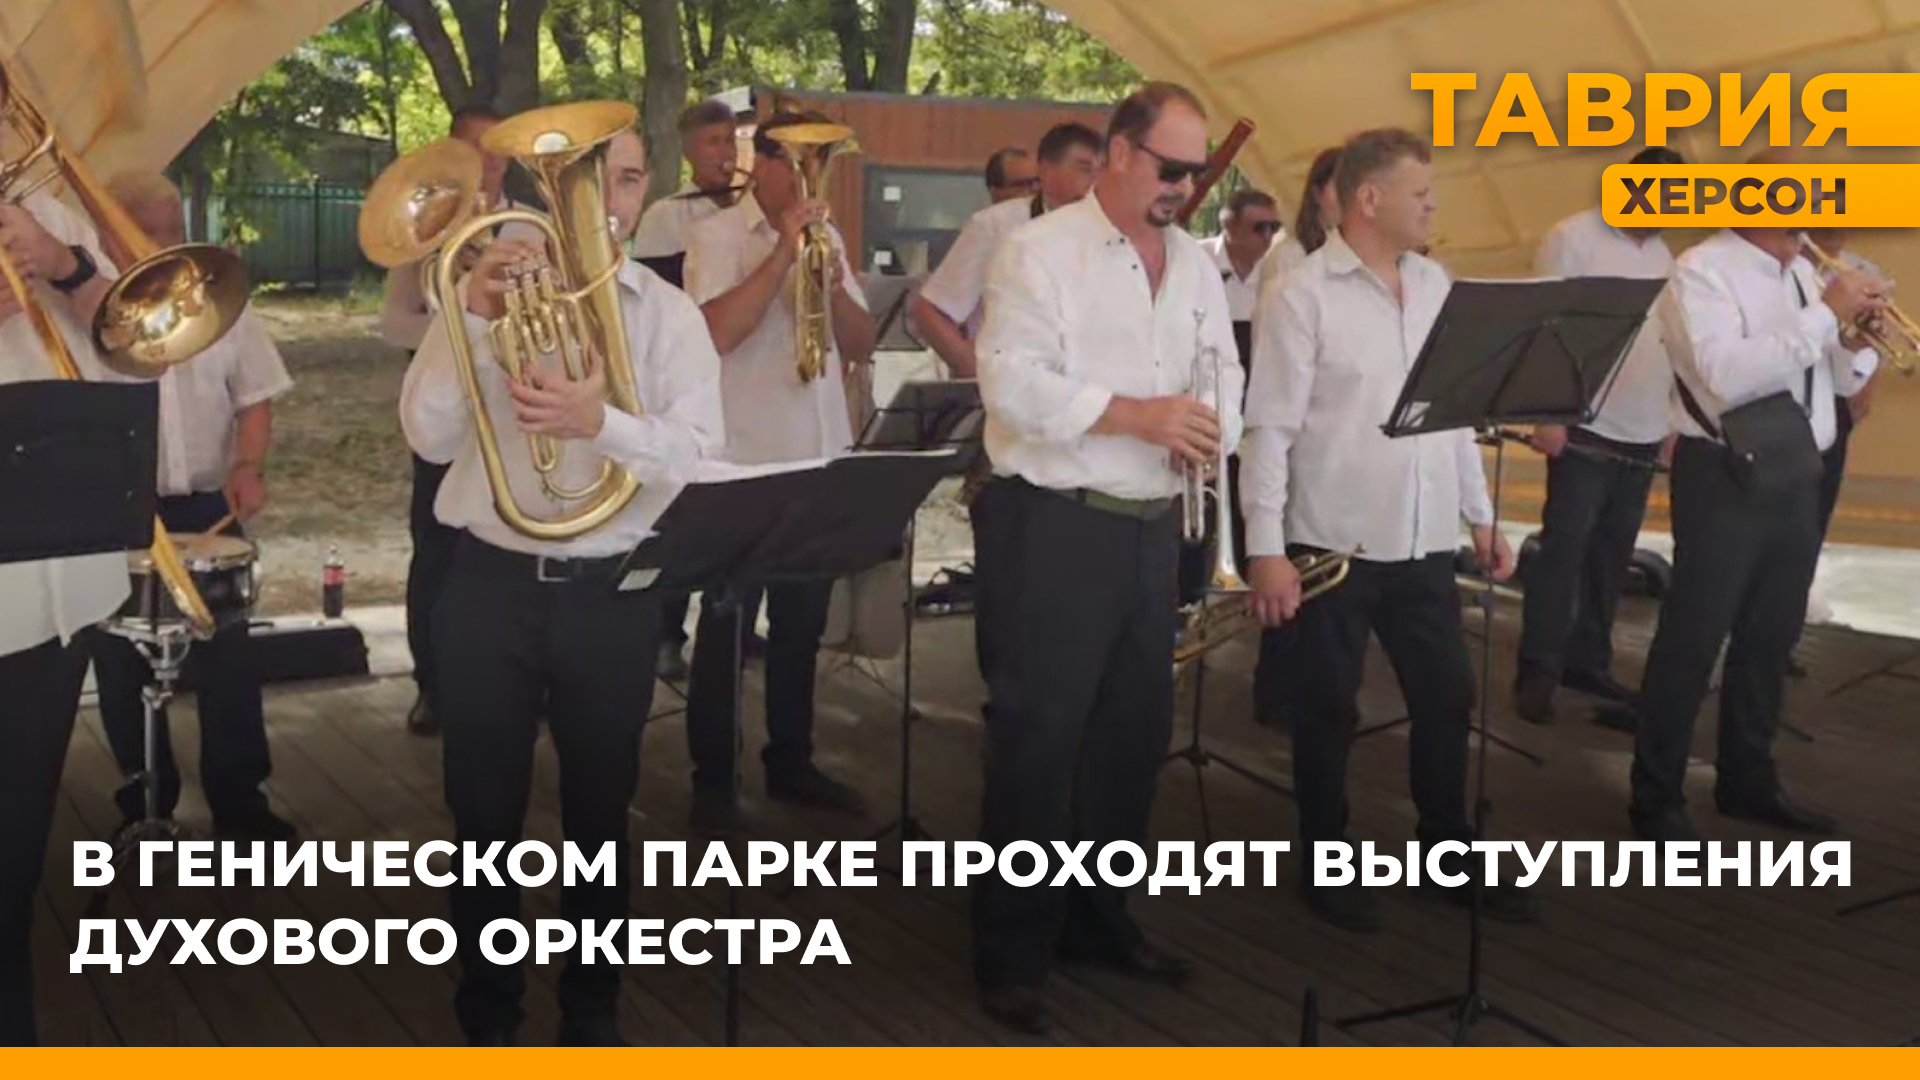 В Геническом парке прошло выступление духового оркестра Херсонского областного дворца культуры